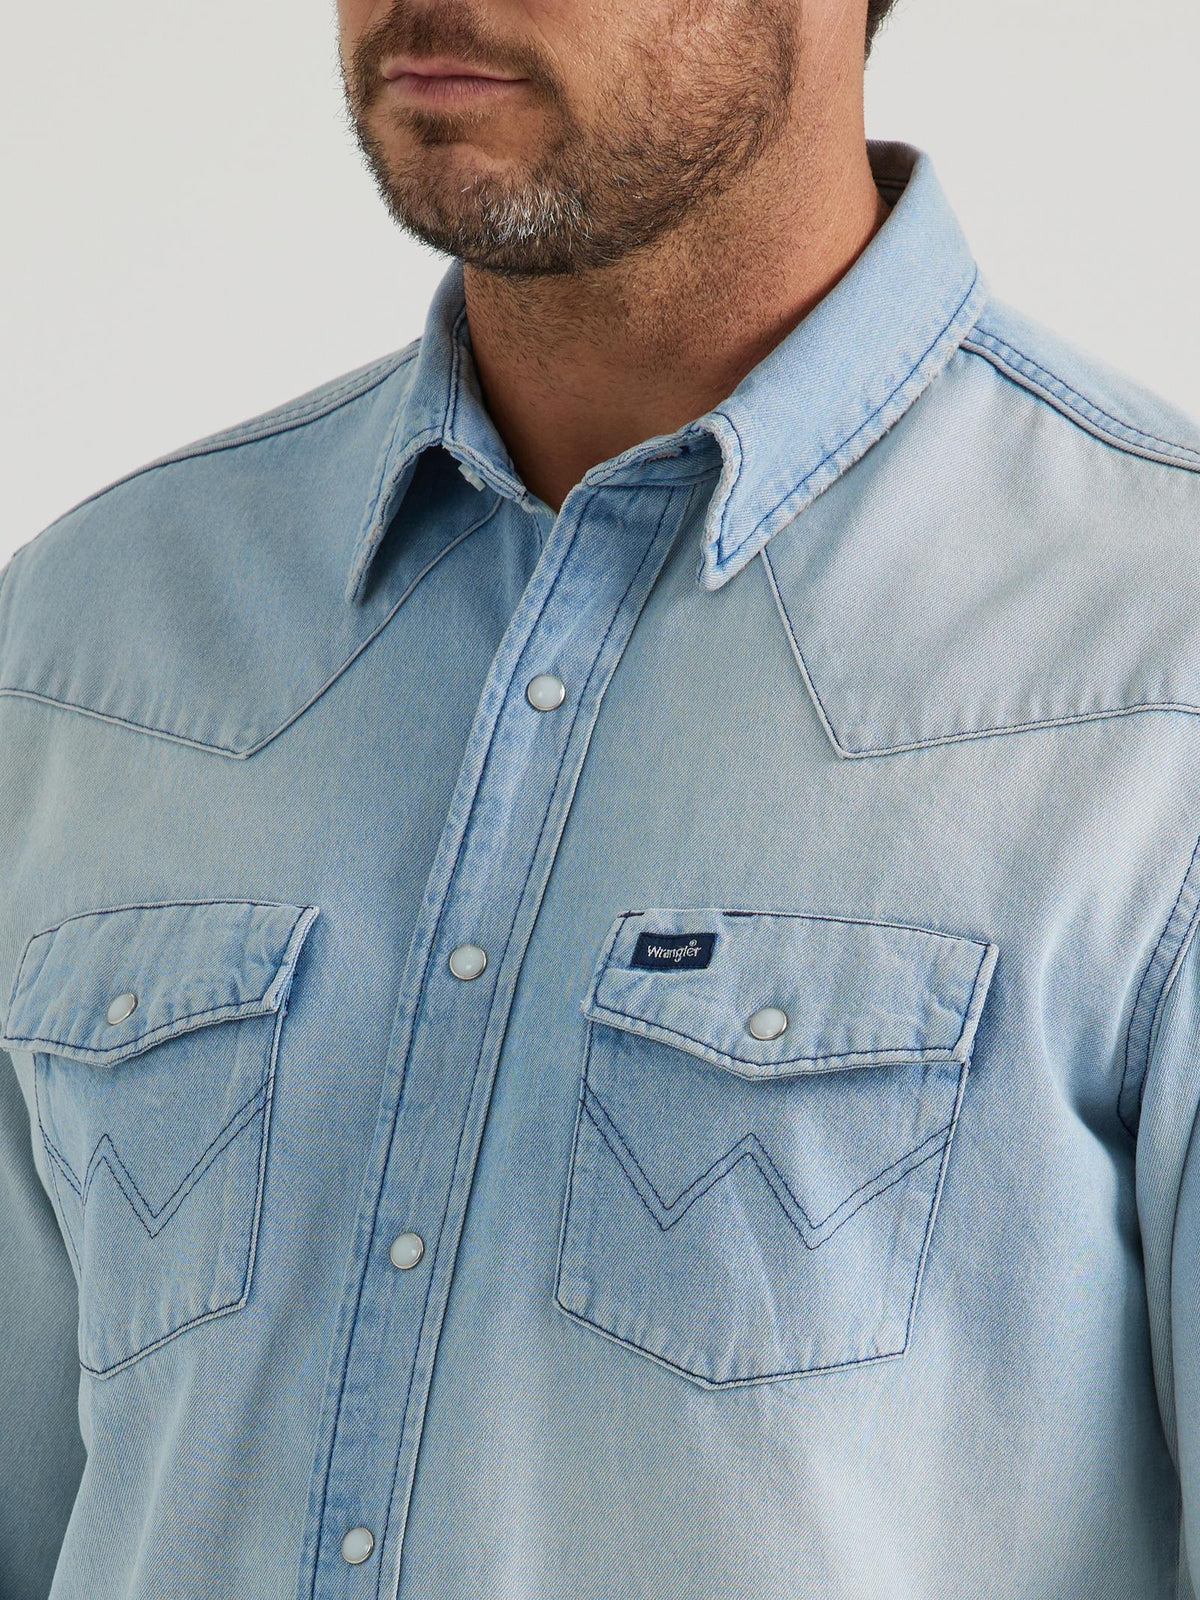 Wrangler Men's Vintage Inspired Long Sleeve Denim Western Snap Shirt in Light Wash